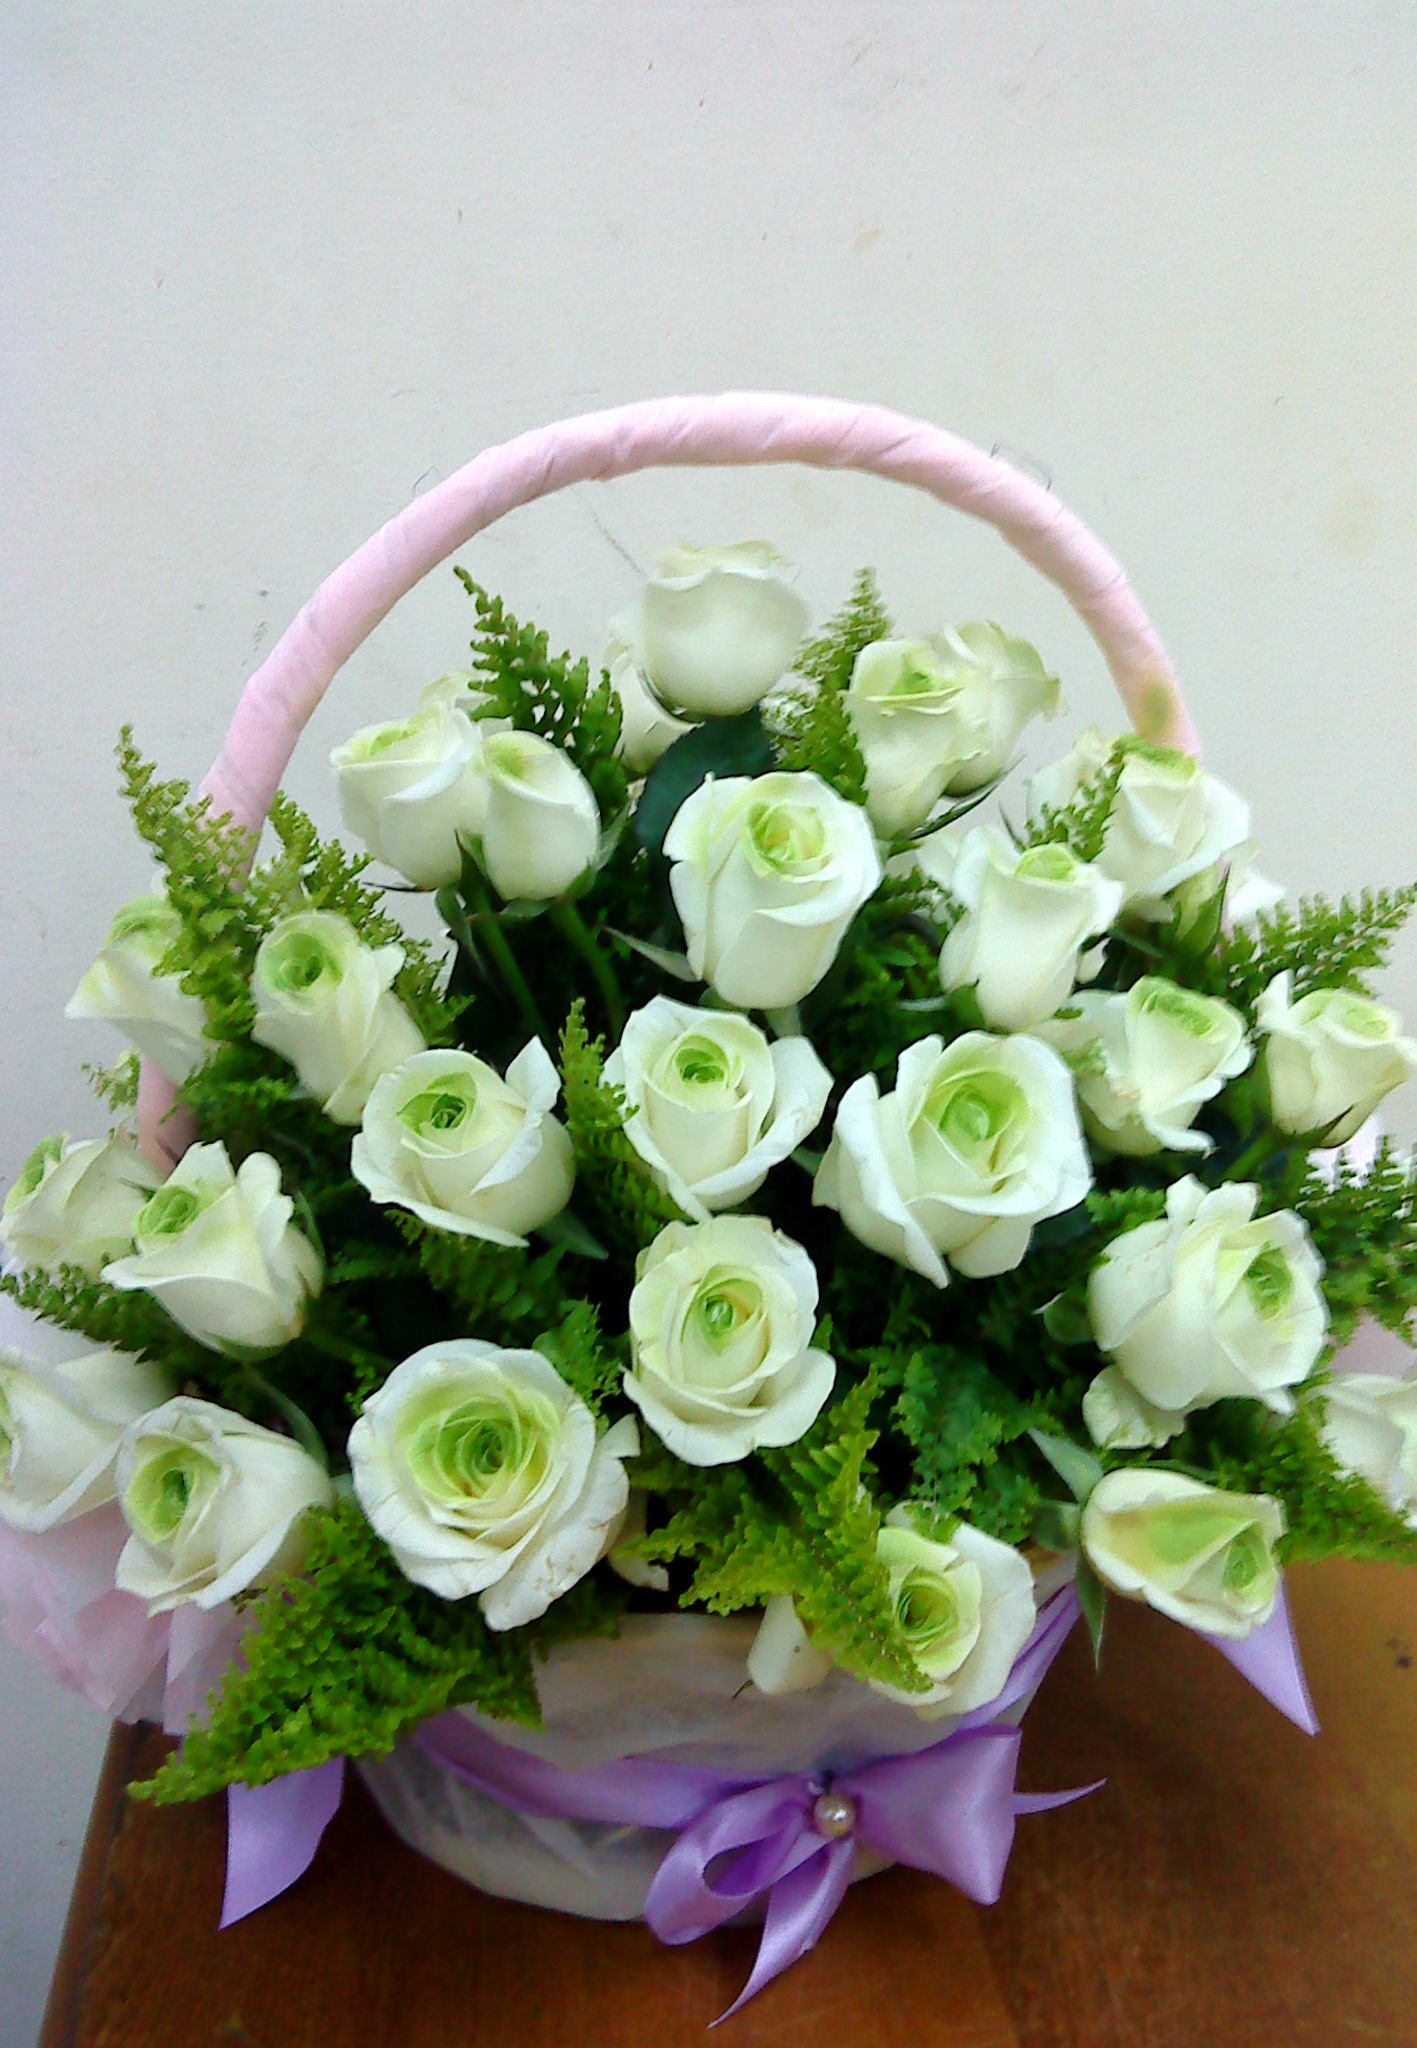 Hình ảnh hoa hồng trắng đẹp